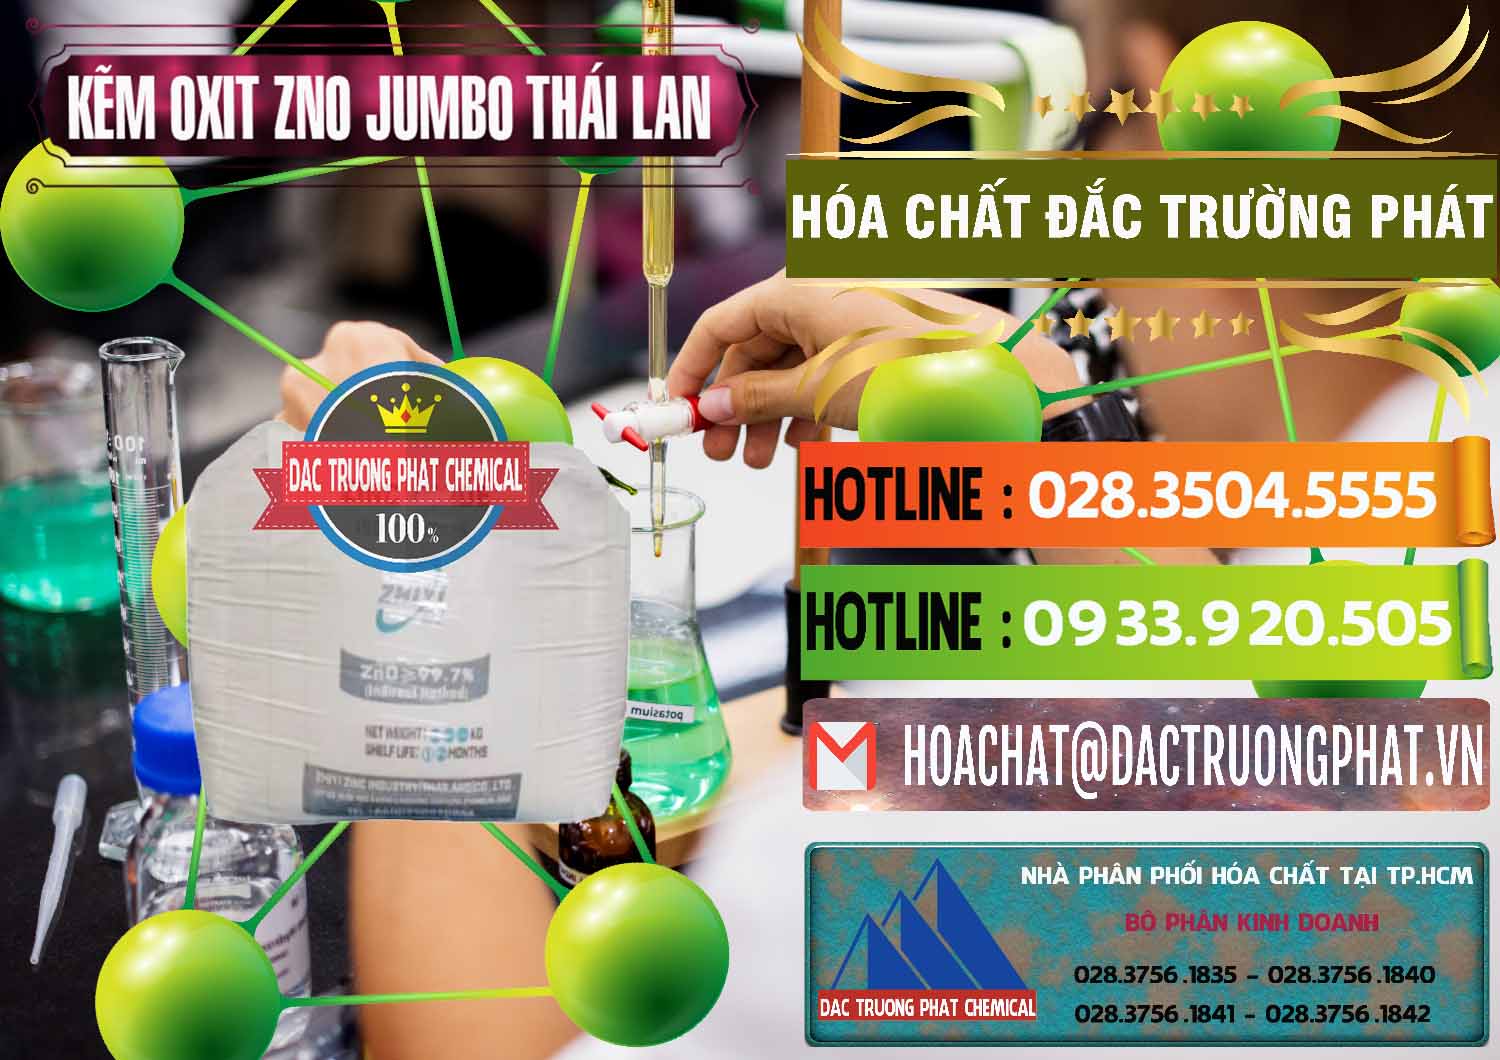 Chuyên nhập khẩu _ bán Zinc Oxide - Bột Kẽm Oxit ZNO Jumbo Bành Thái Lan Thailand - 0370 - Phân phối ( cung cấp ) hóa chất tại TP.HCM - cungcaphoachat.com.vn